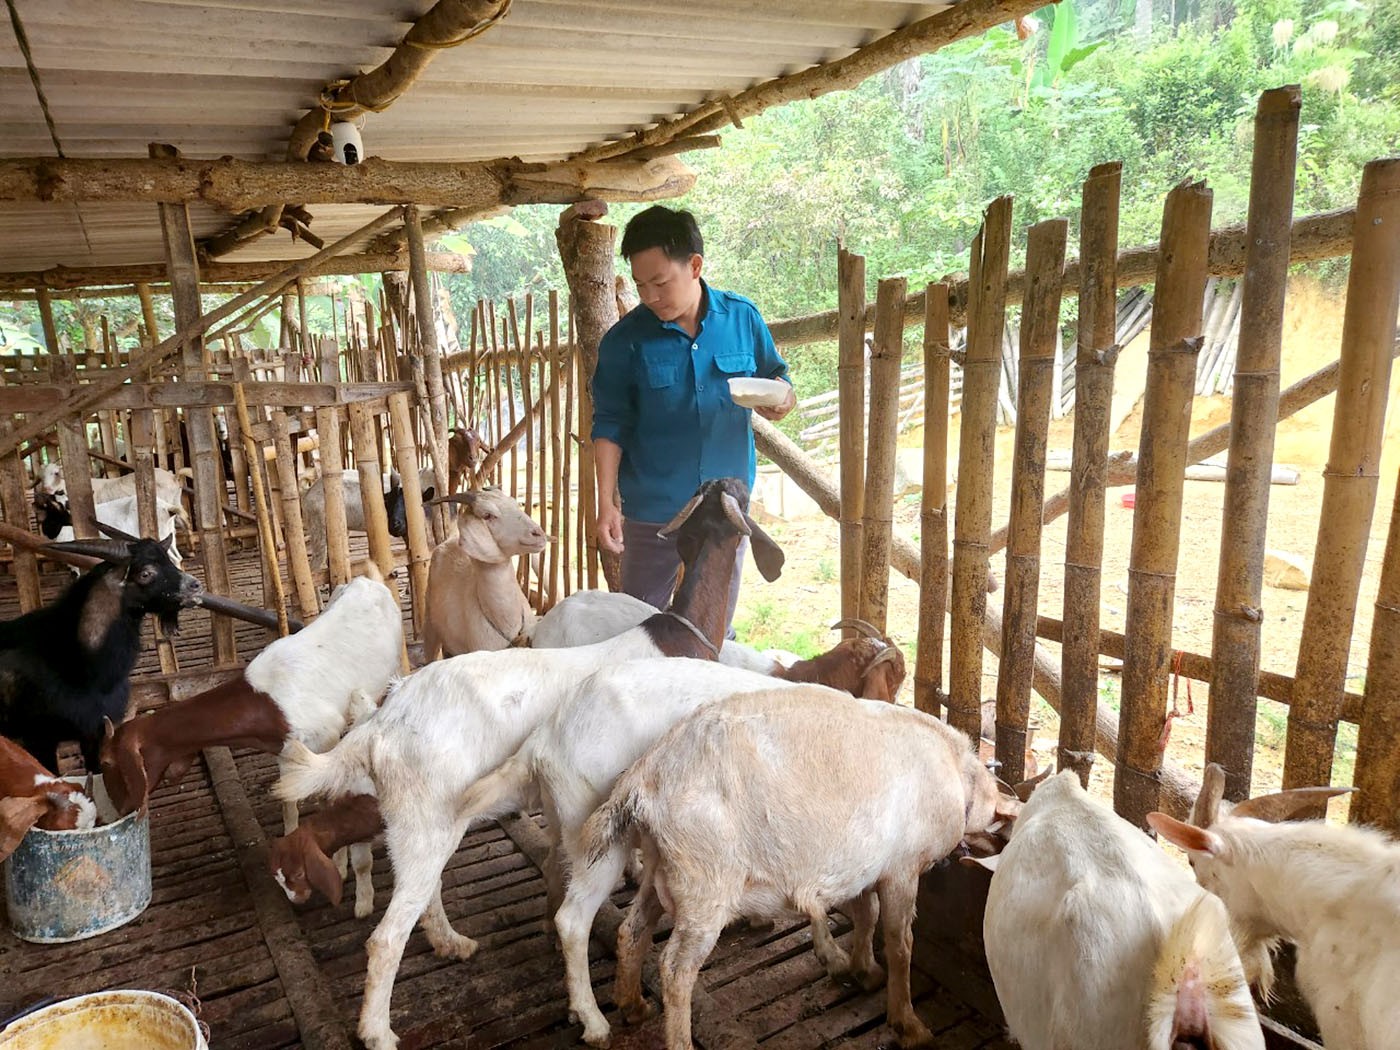 Chuyện những người “Ăn rừng ngủ núi” giữ biên ở Hà Giang - Bài 1: Những sỹ quan quân hàm xanh về làm cán bộ xã